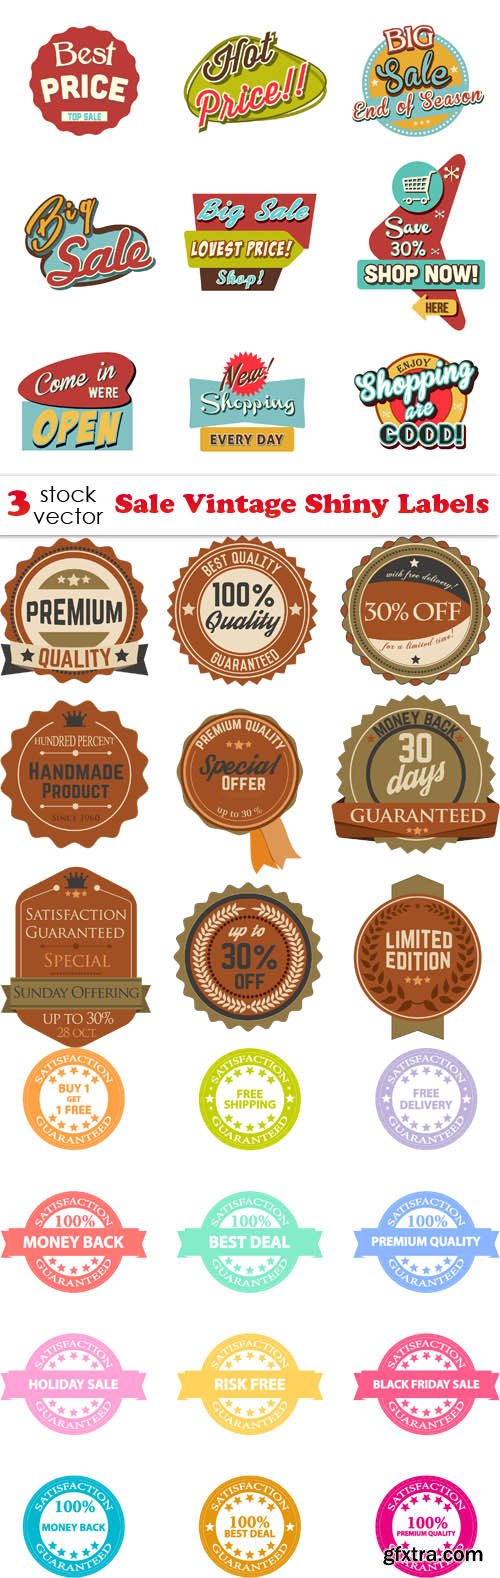 Vectors - Sale Vintage Shiny Labels